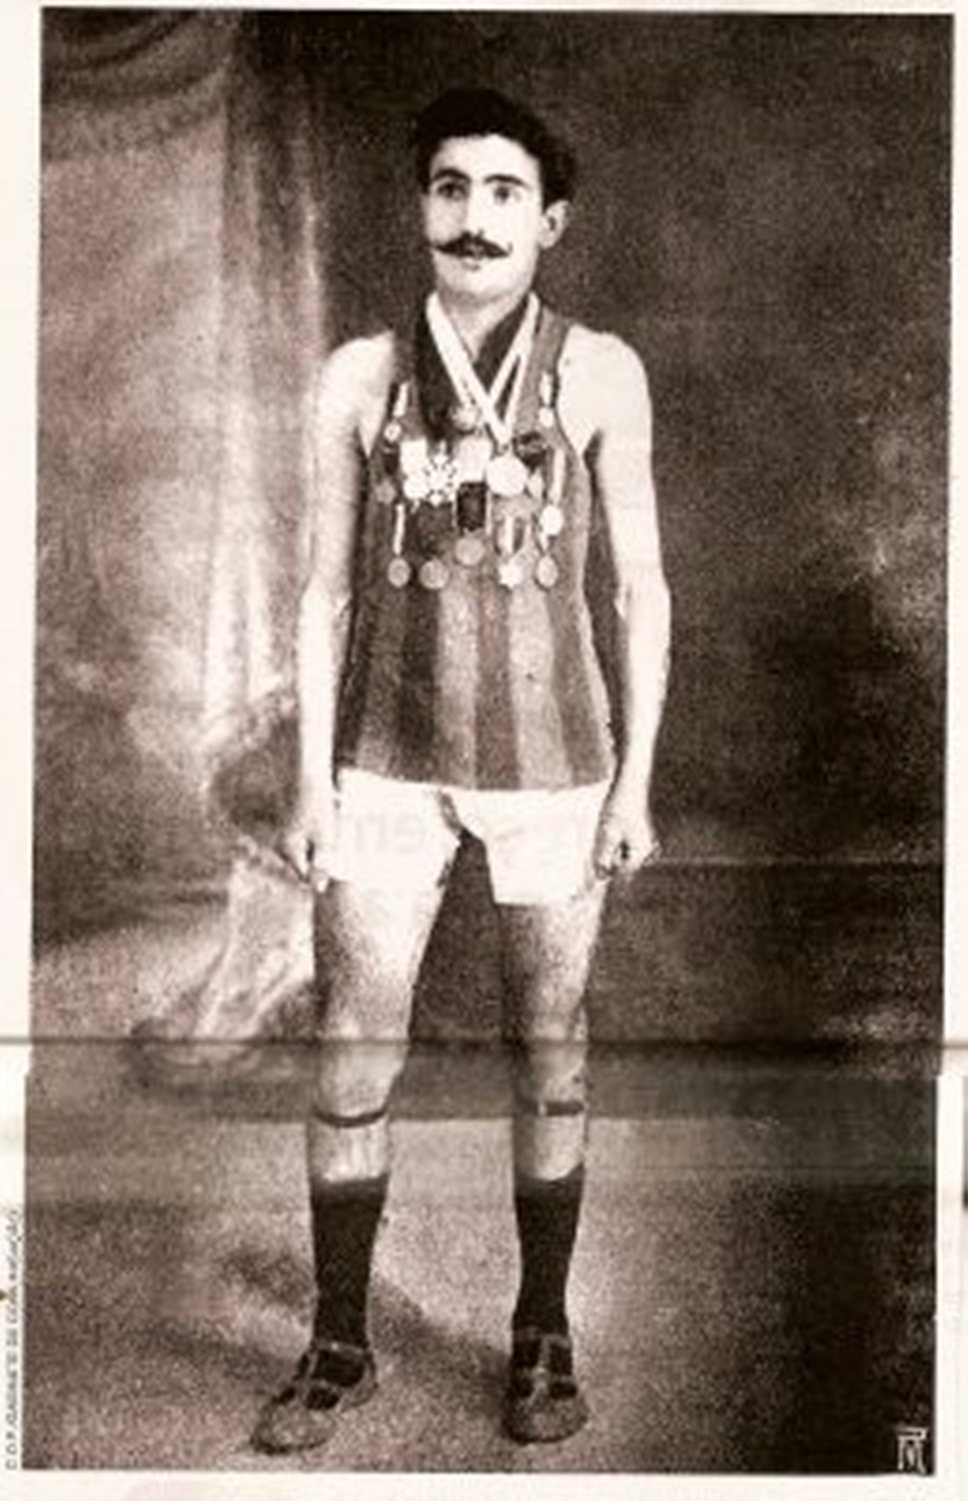 Марафонец Франсиску Лазару стал первым спортсменом, который умер во время Олимпийских игр. В 1912 году на V Играх в Стокгольме 21-летний португалец, бывший на Играх знаменосцем своей страны, испугался солнечных ожогов и намазал тело воском. Он упал на 29-м километре. Сначала посчитали, что смерть наступила из-за обезвоживания, позже выяснилось, что причиной был воск, затруднивший выделение пота и вызвавший перегрев организма спортсмена